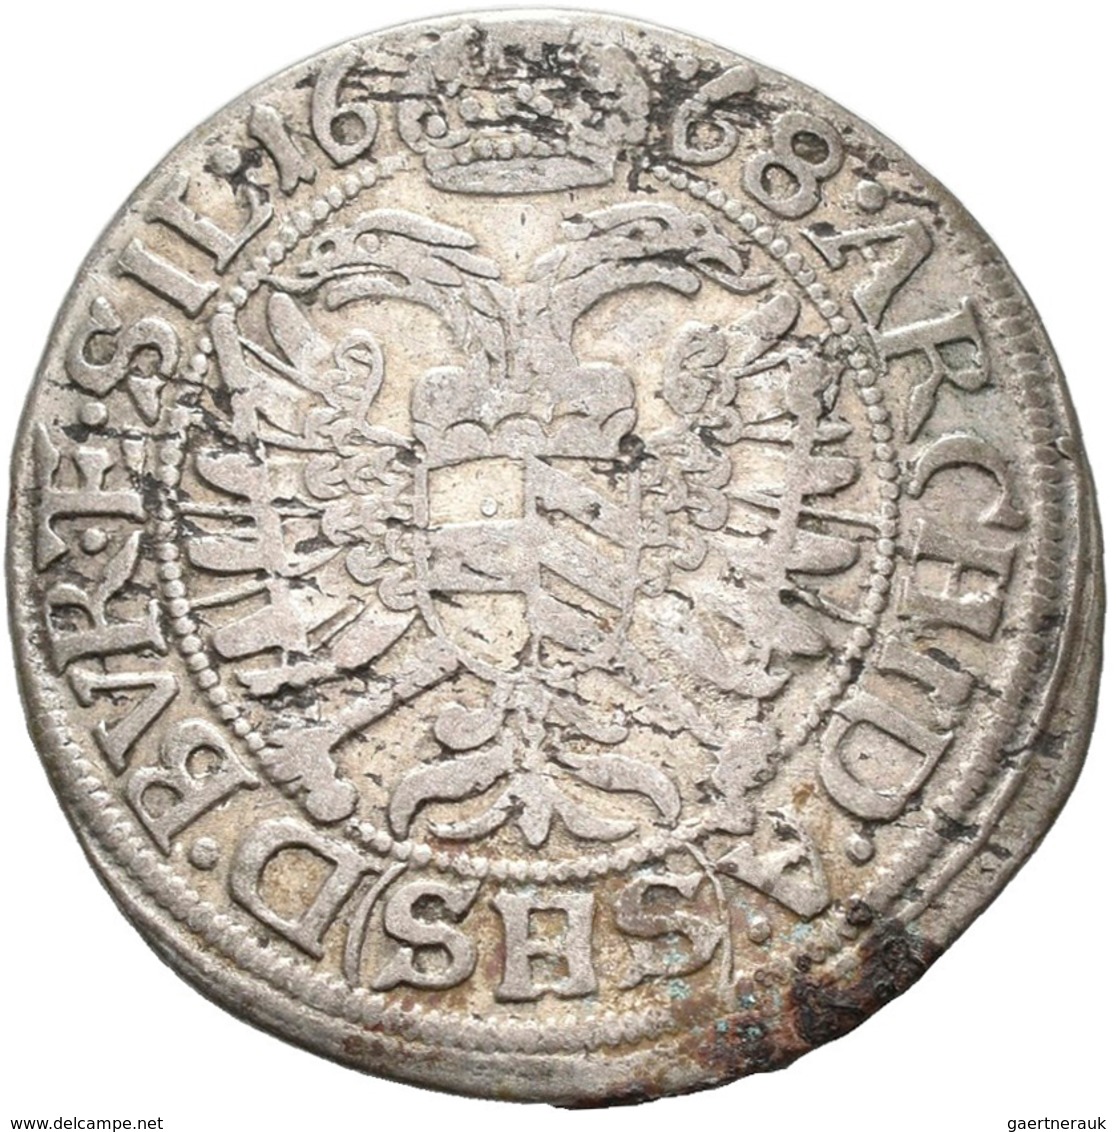 Haus Habsburg: Lot 8 Münzen; 15 Kreuzer 1676, 1681, 1689, 6 Kreuzer 1671, 3 Kreuzer 1668, 1997, 1699